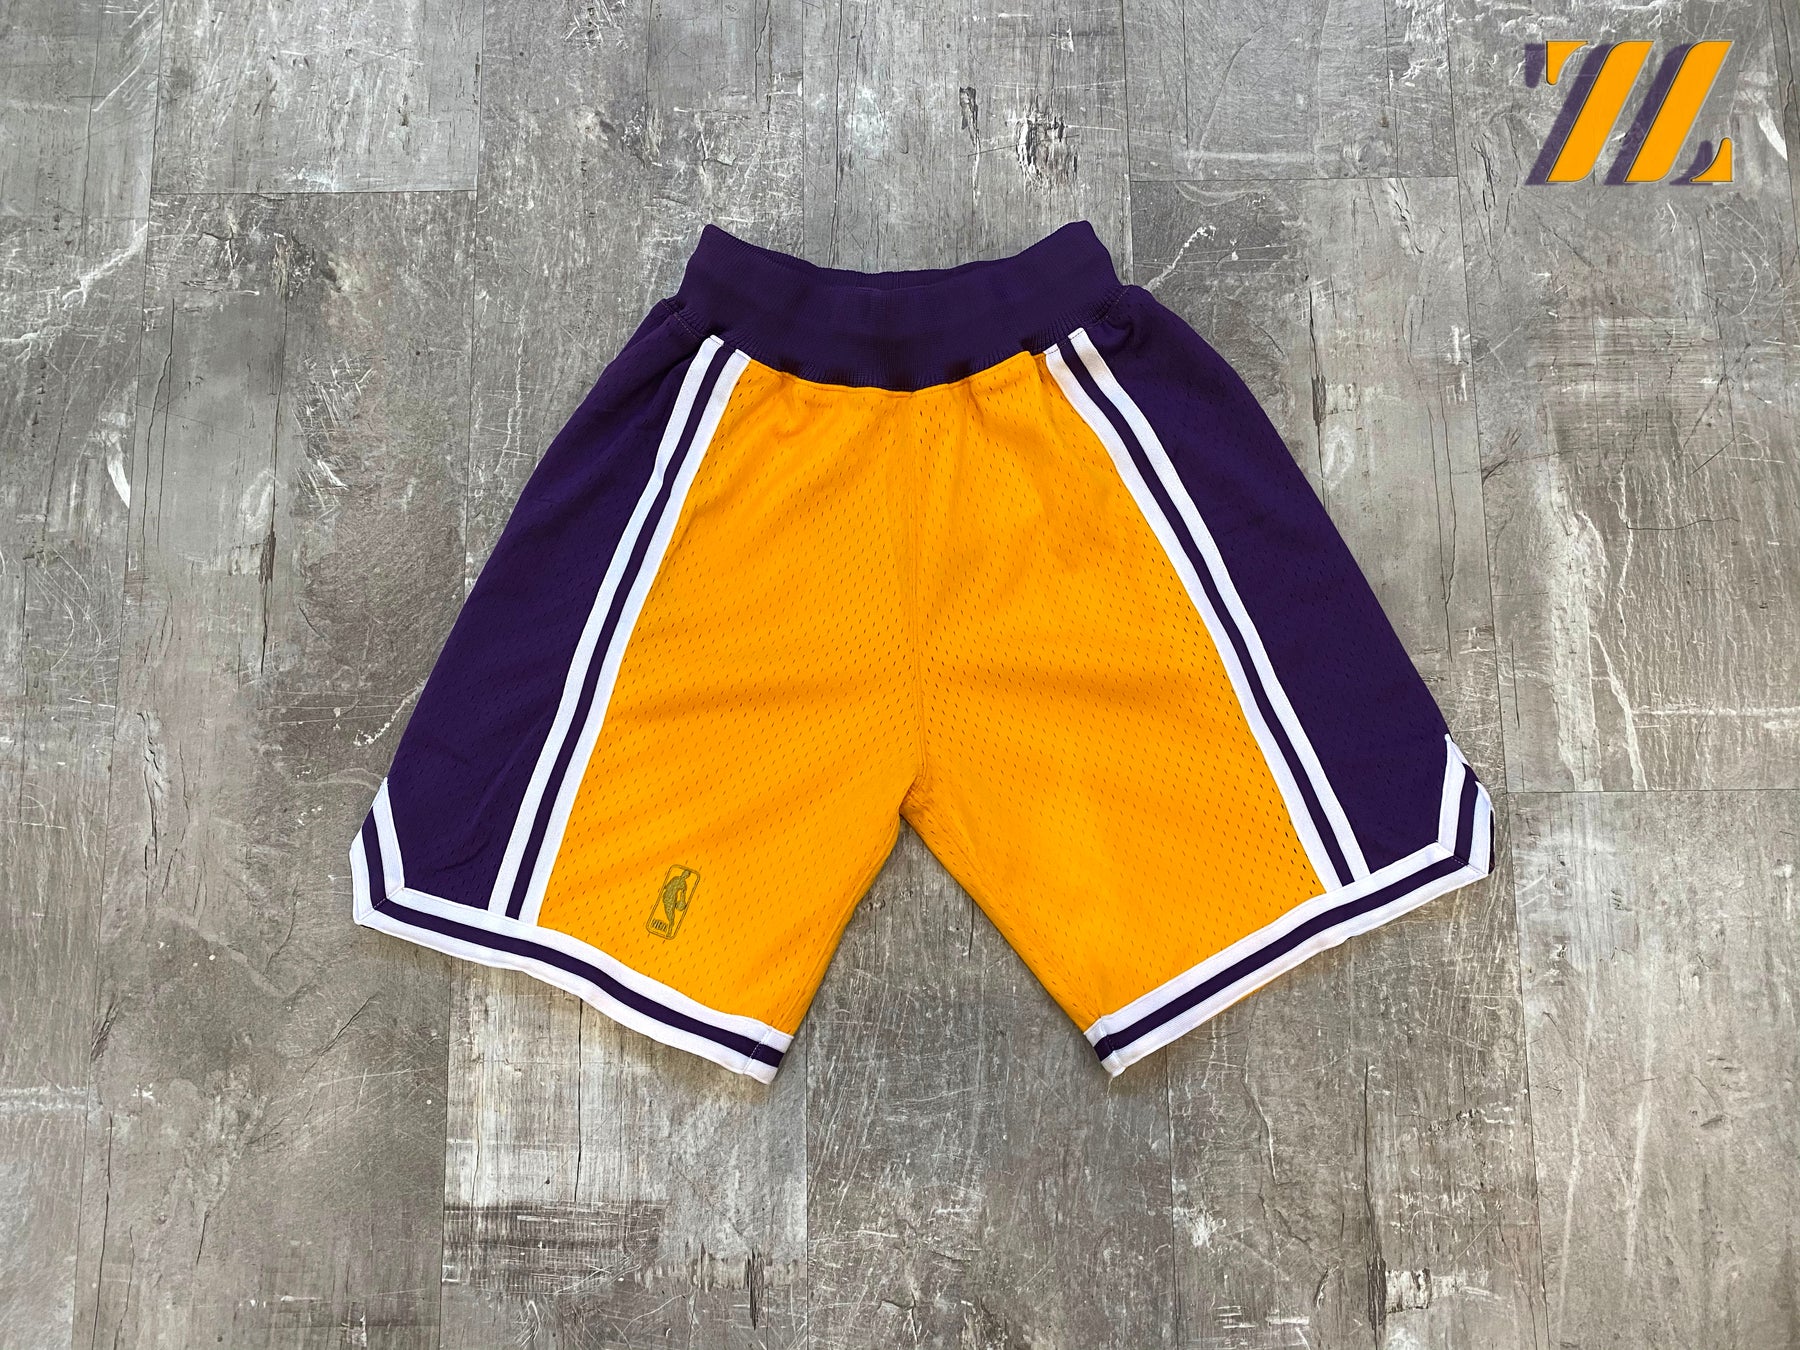 Men's Shorts & Pants – Lakers Store